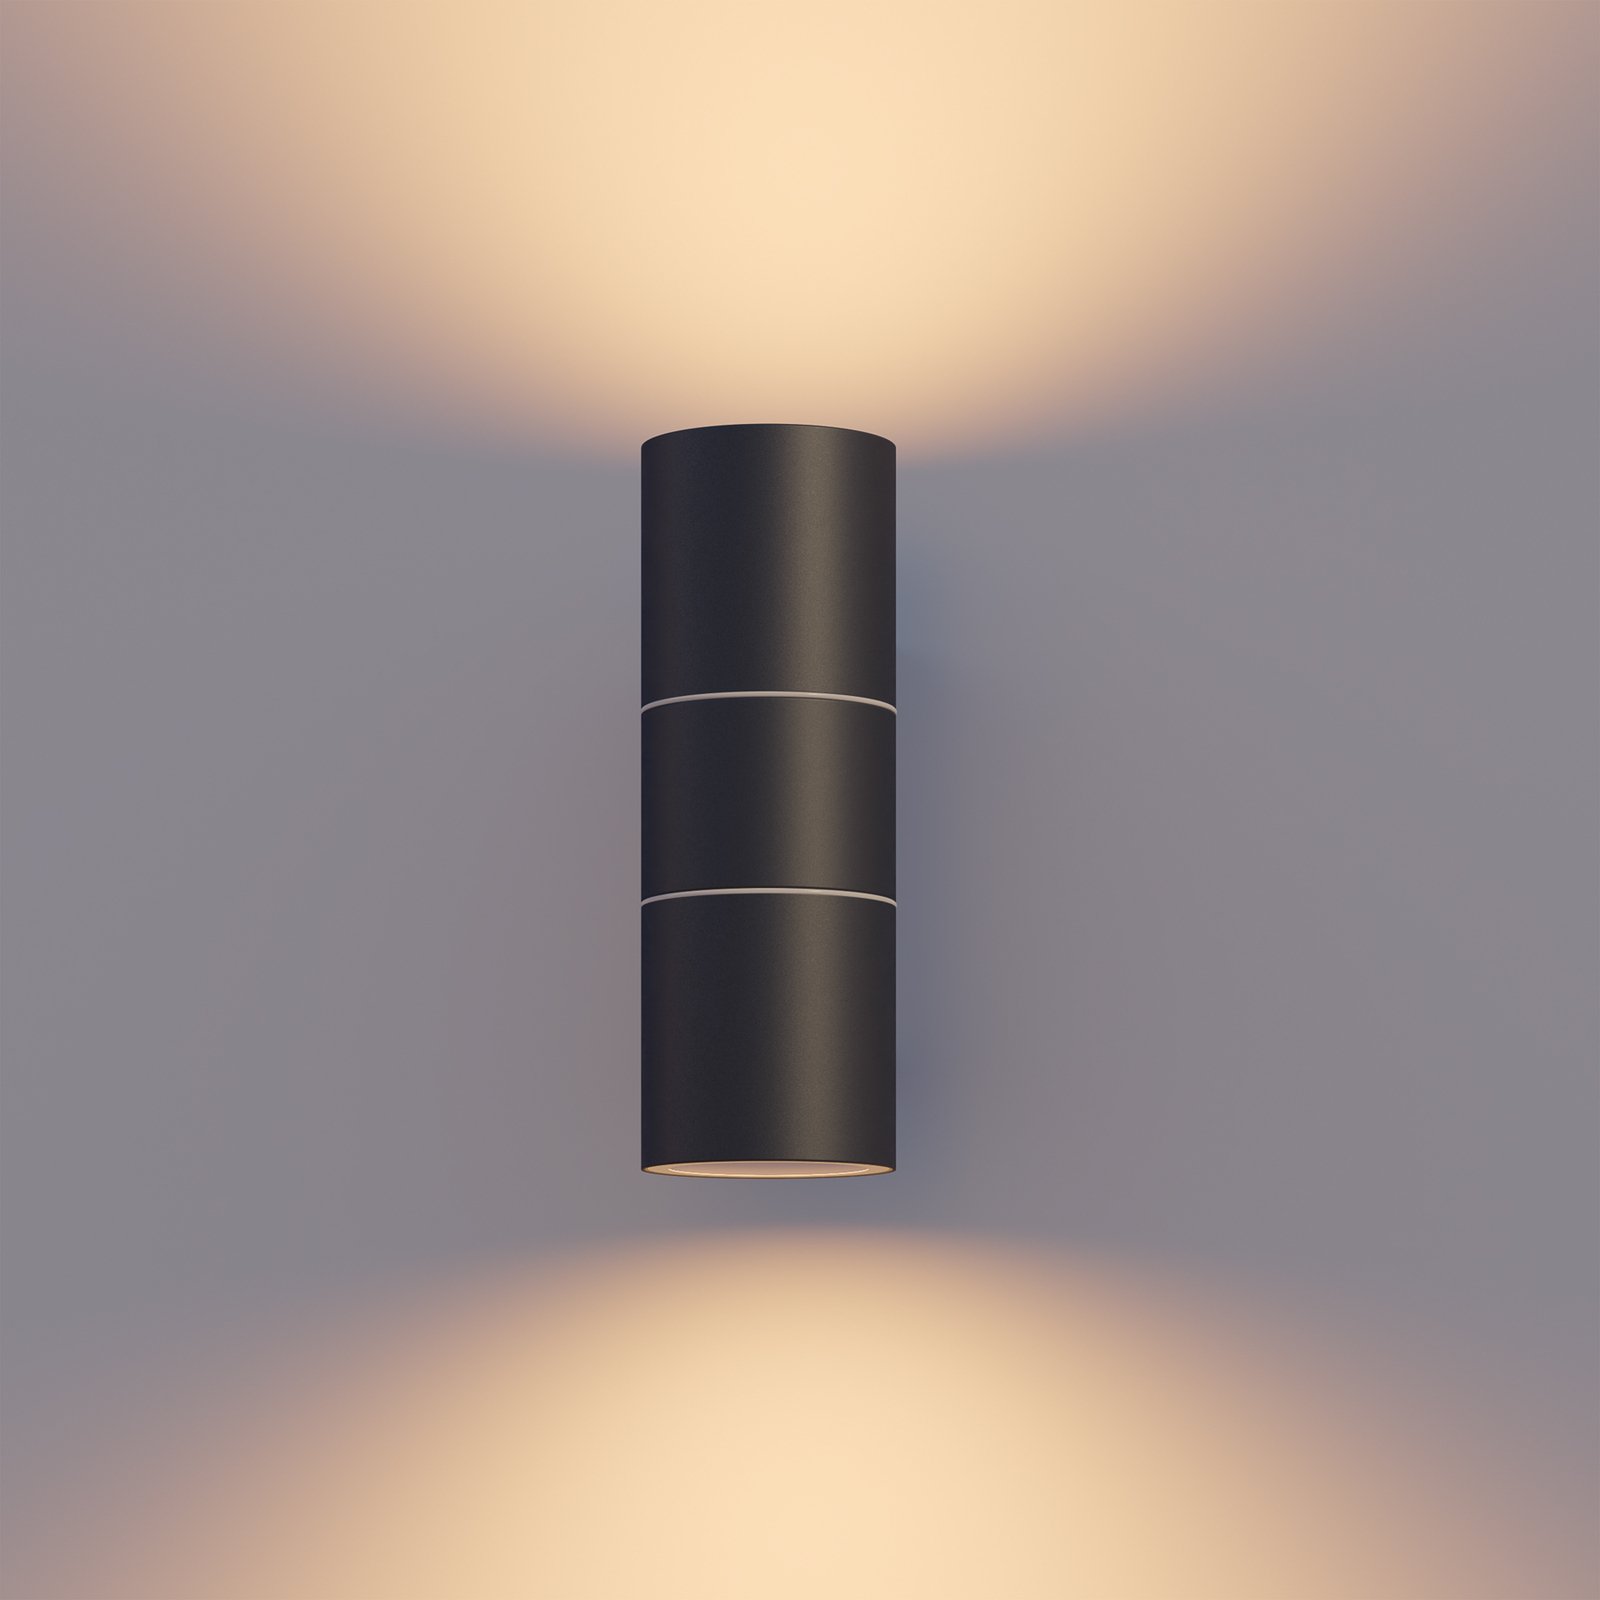 Calex buitenwandlamp GU10 roestvrij staal, up/down, 17 cm, zwart